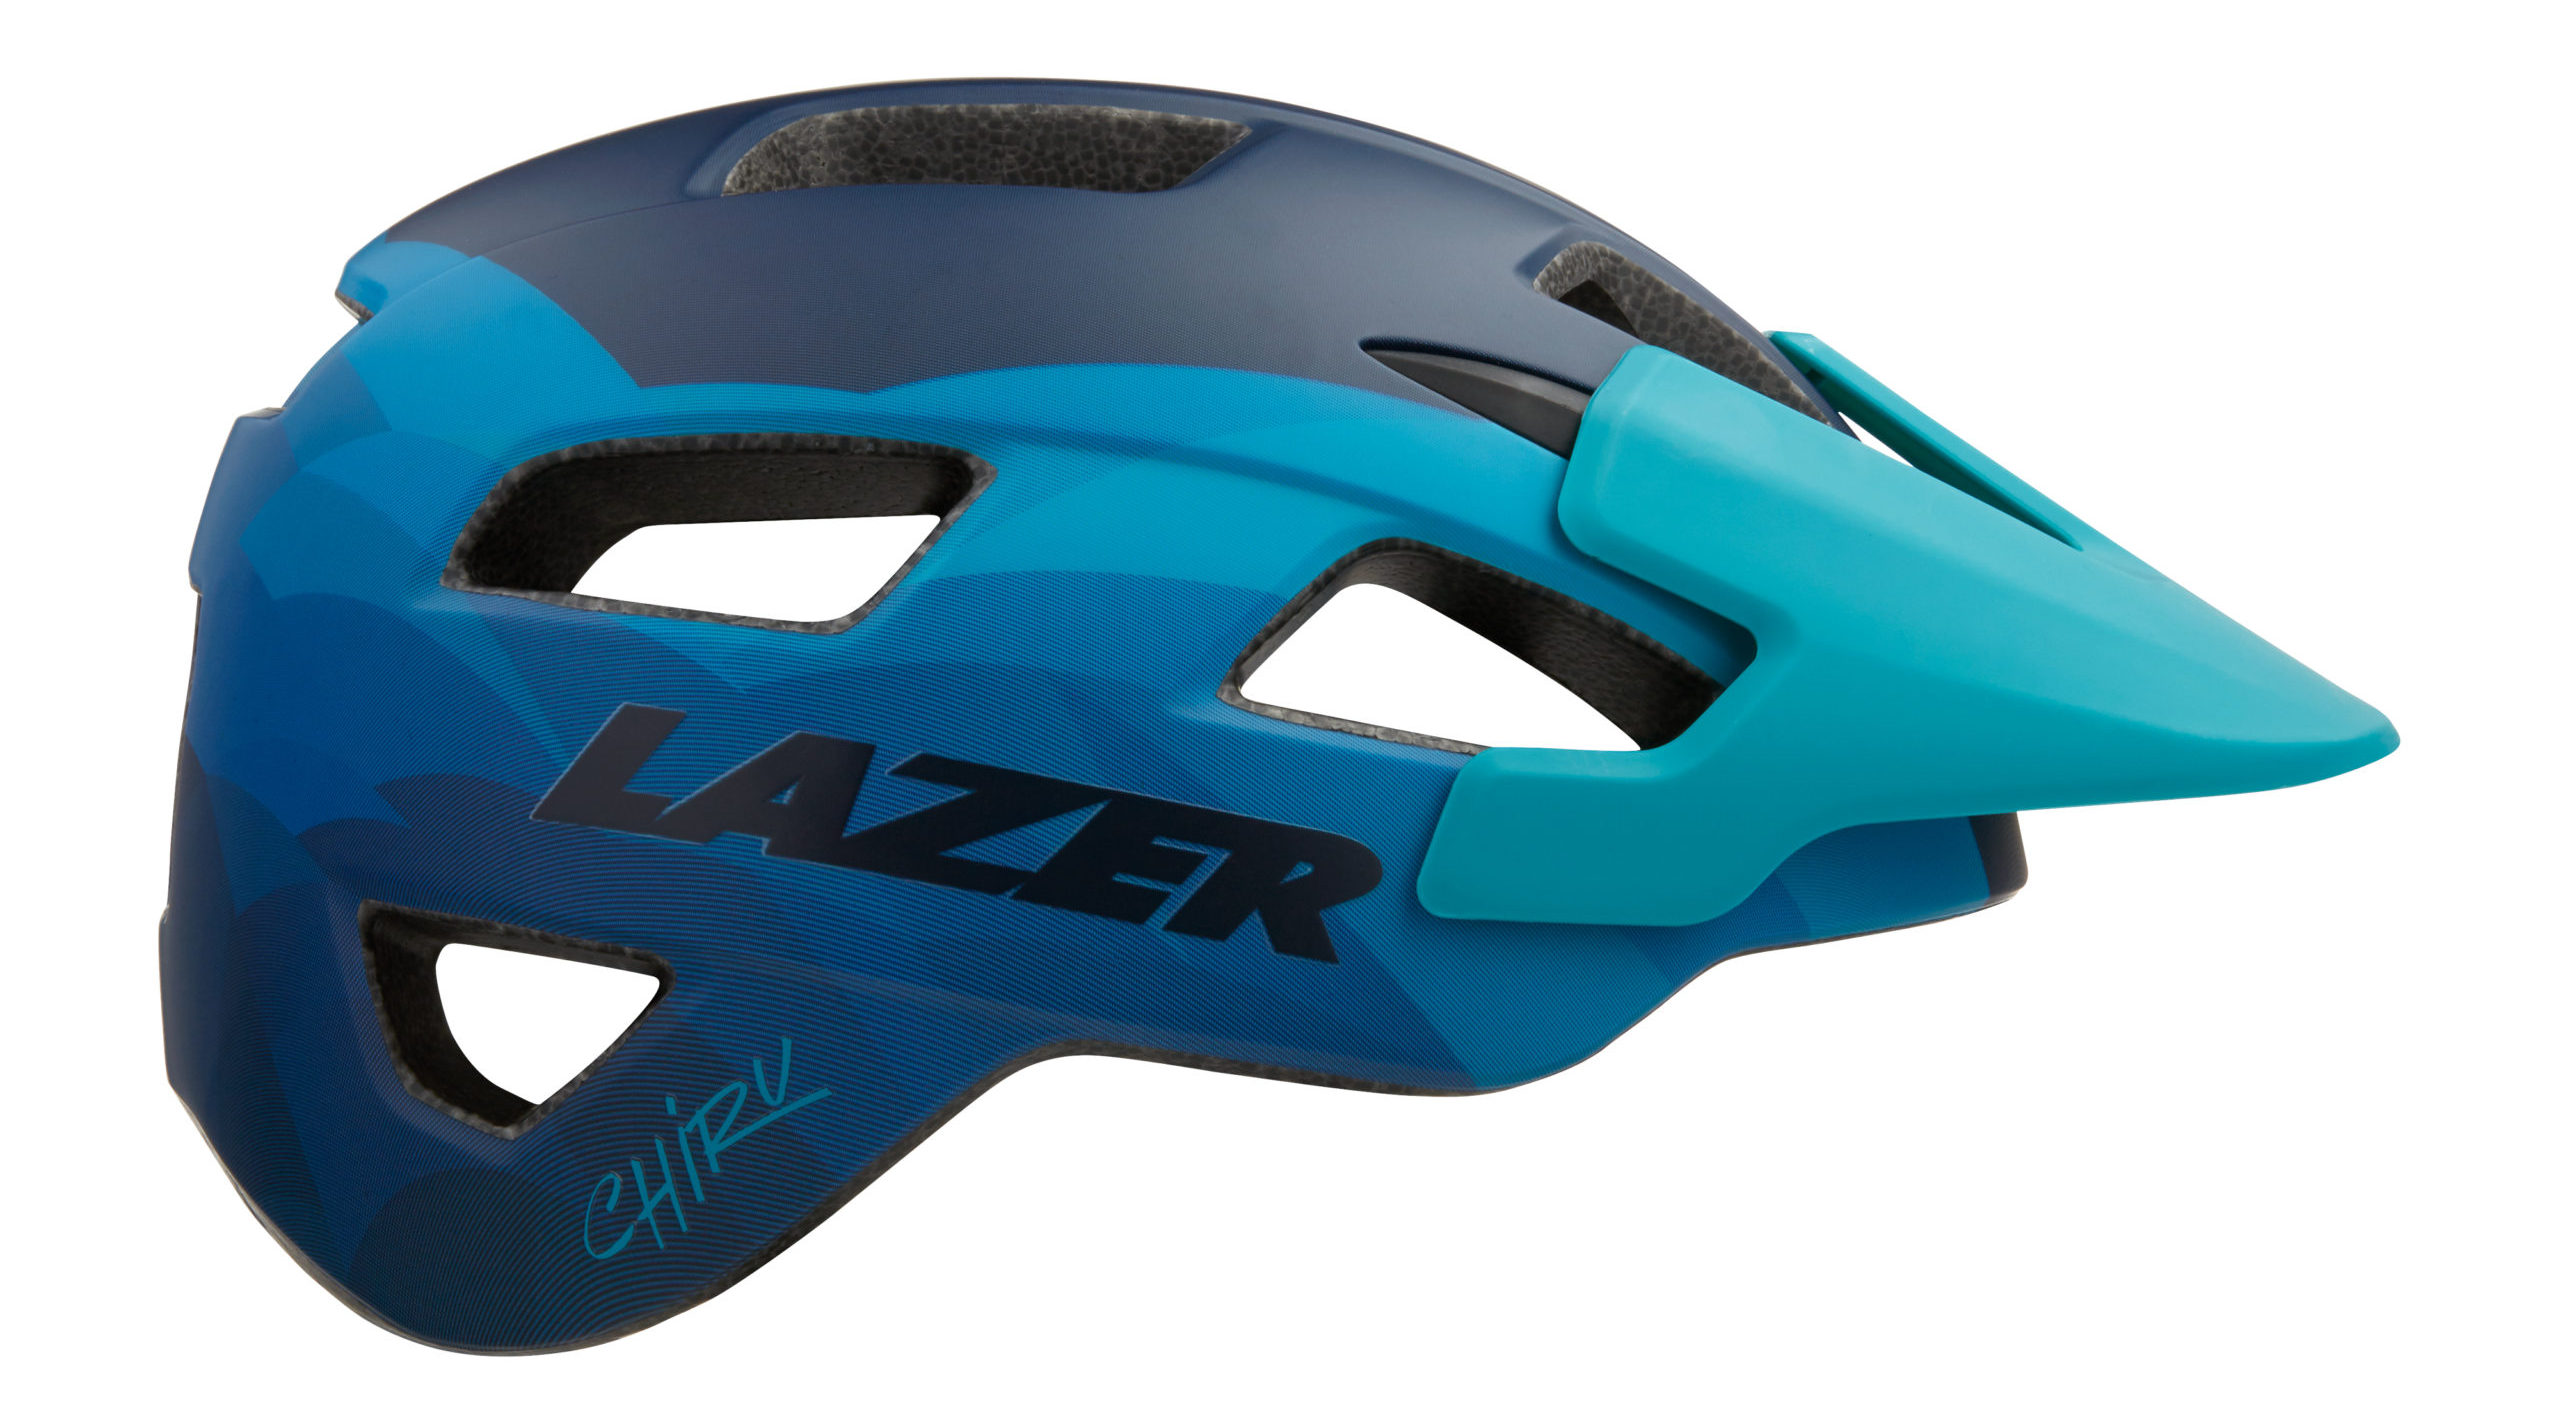 Verbanning Bengelen geweten Lazer Helmet for All Budgets - Shimano Cycling World